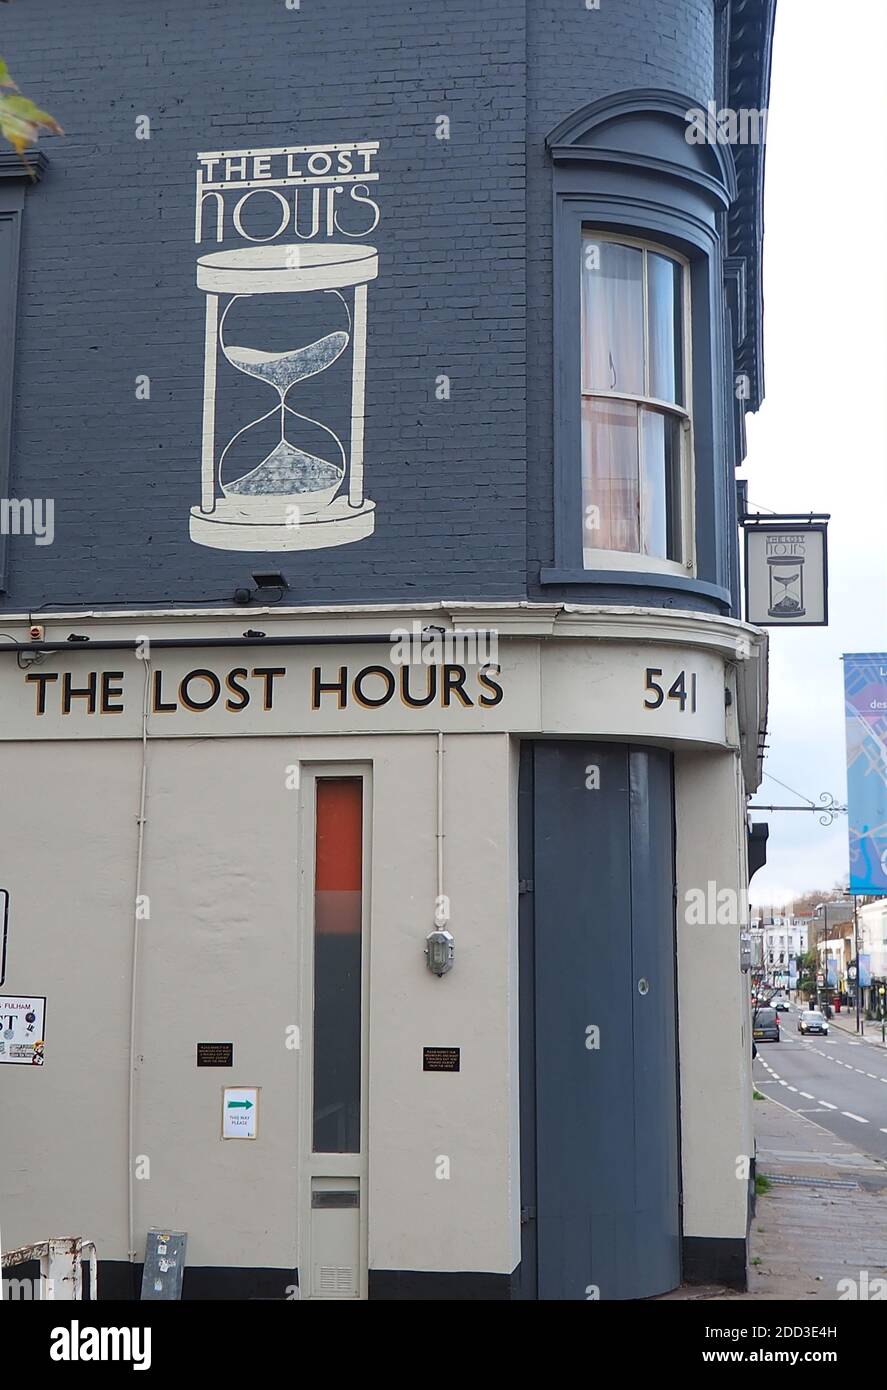 Londres, Royaume-Uni. 24 novembre 2020. Les pubs et les bars seront autorisés à rouvrir le 2 décembre, mais selon des règles plus strictes. Photo: Le pub bien nommé “The Lost hours” à Chelsea. Crédit : Brian Minkoff/Alamy Live News Banque D'Images